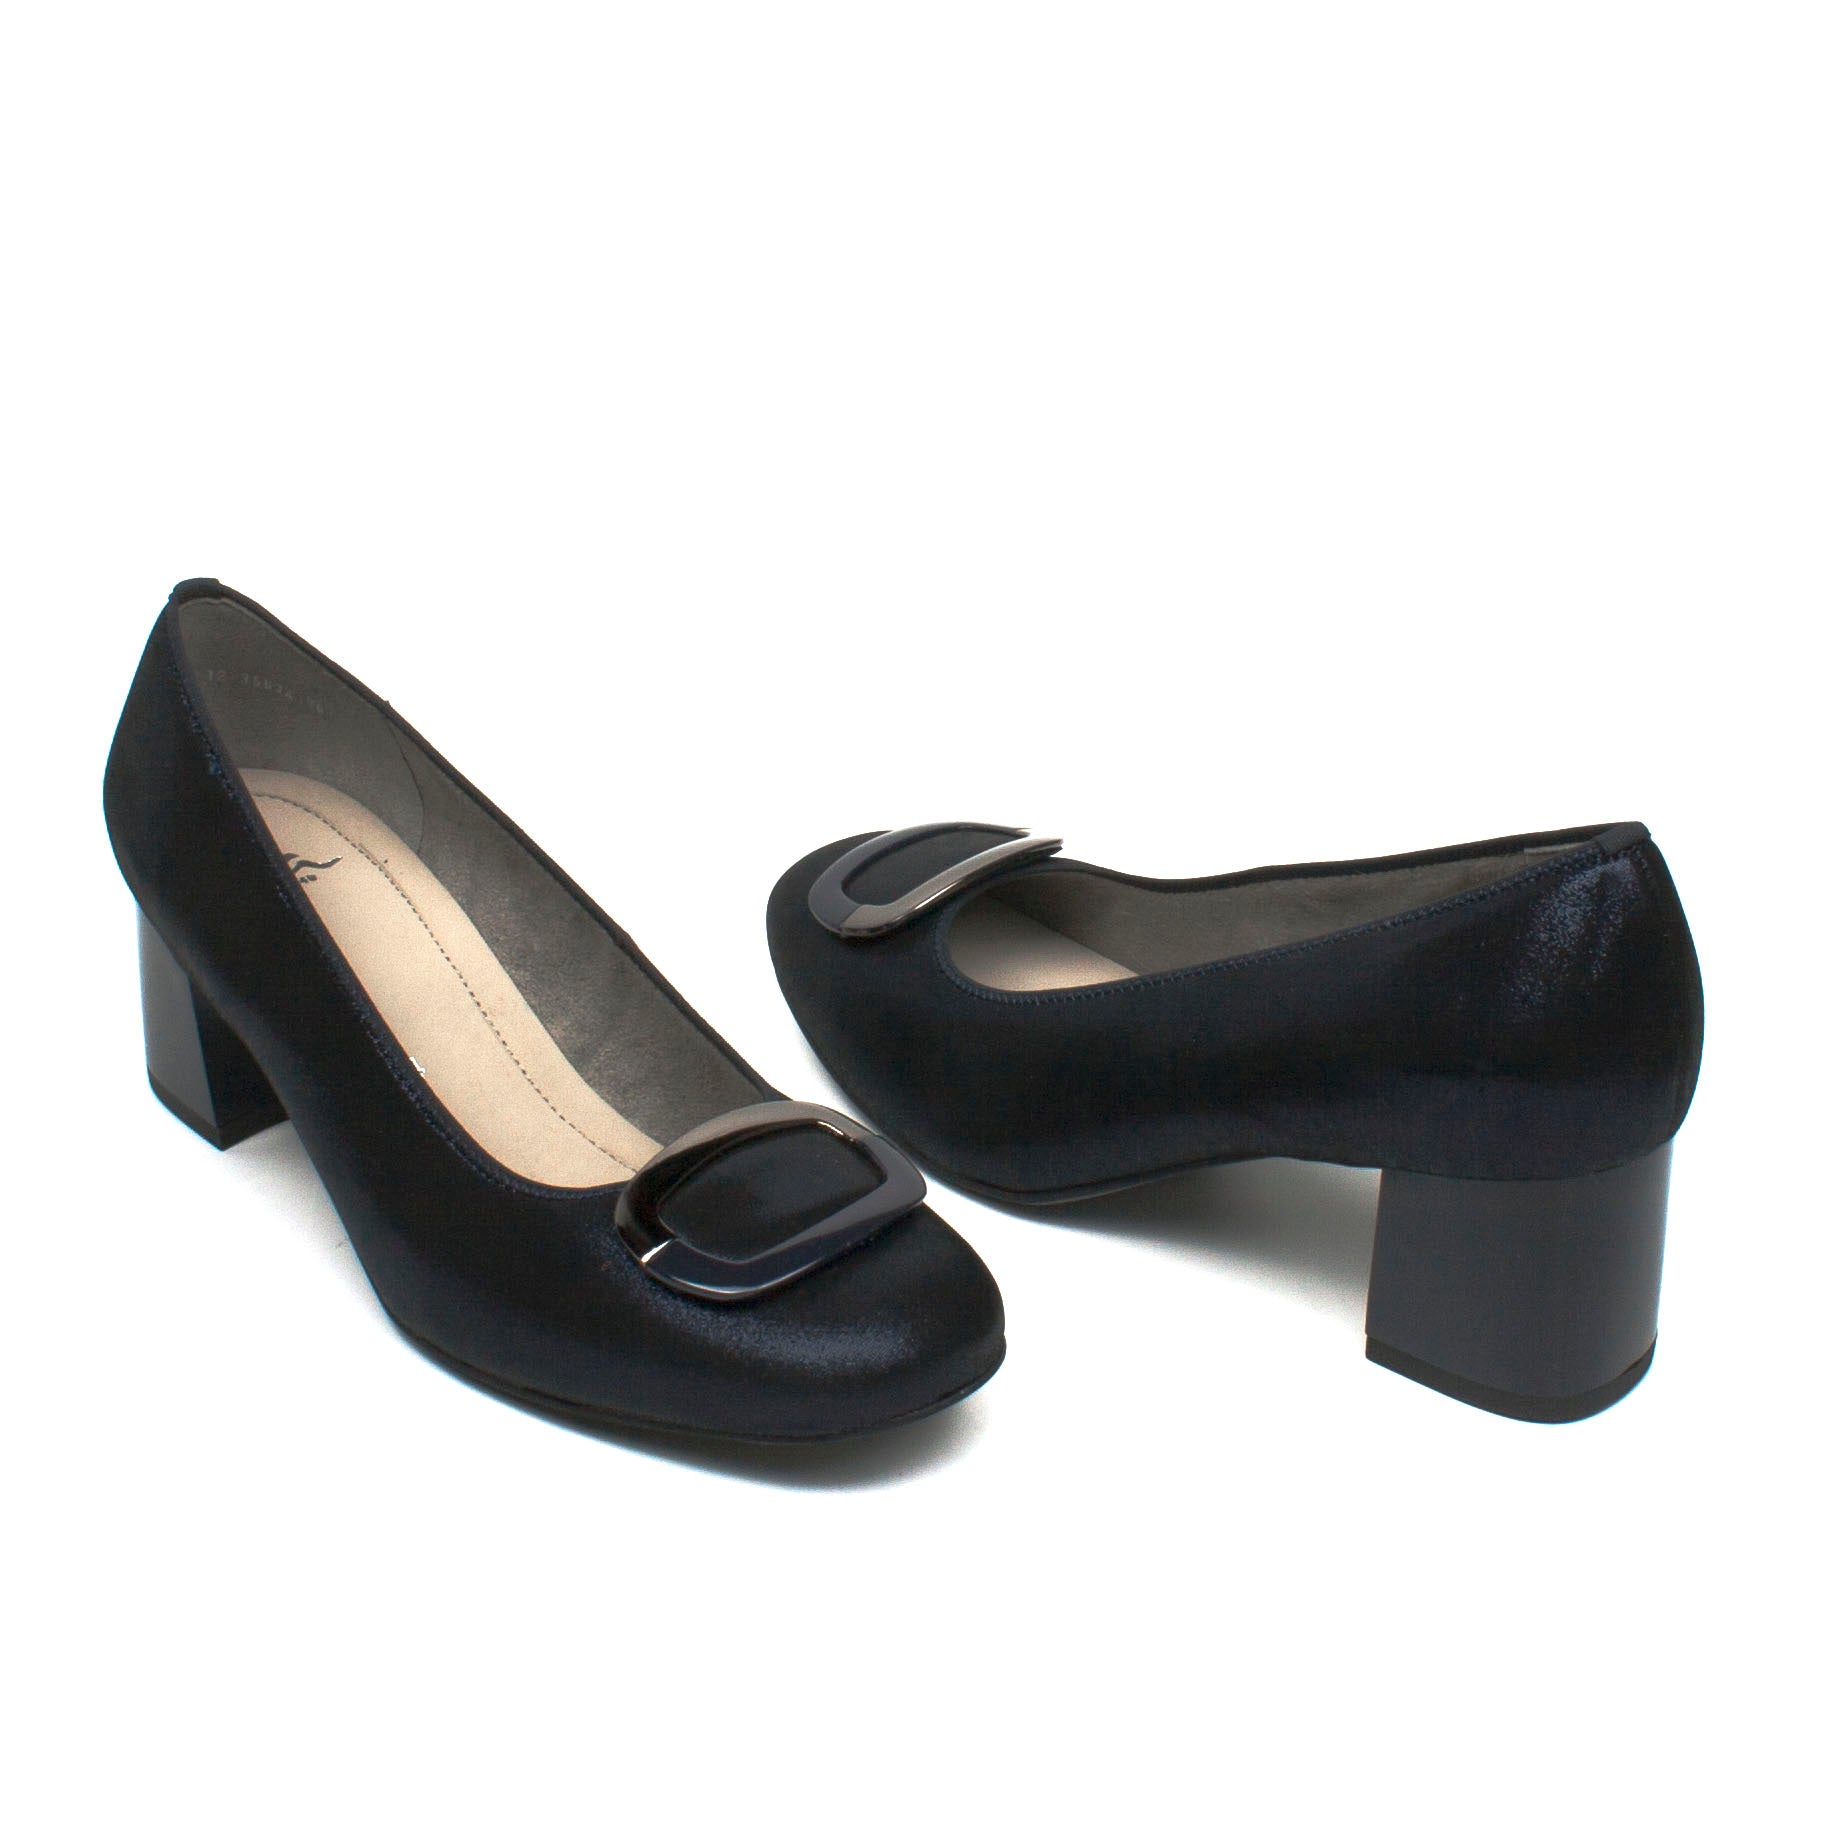 Ara pantofi dama eleganti bleumarin ID1661-BLM